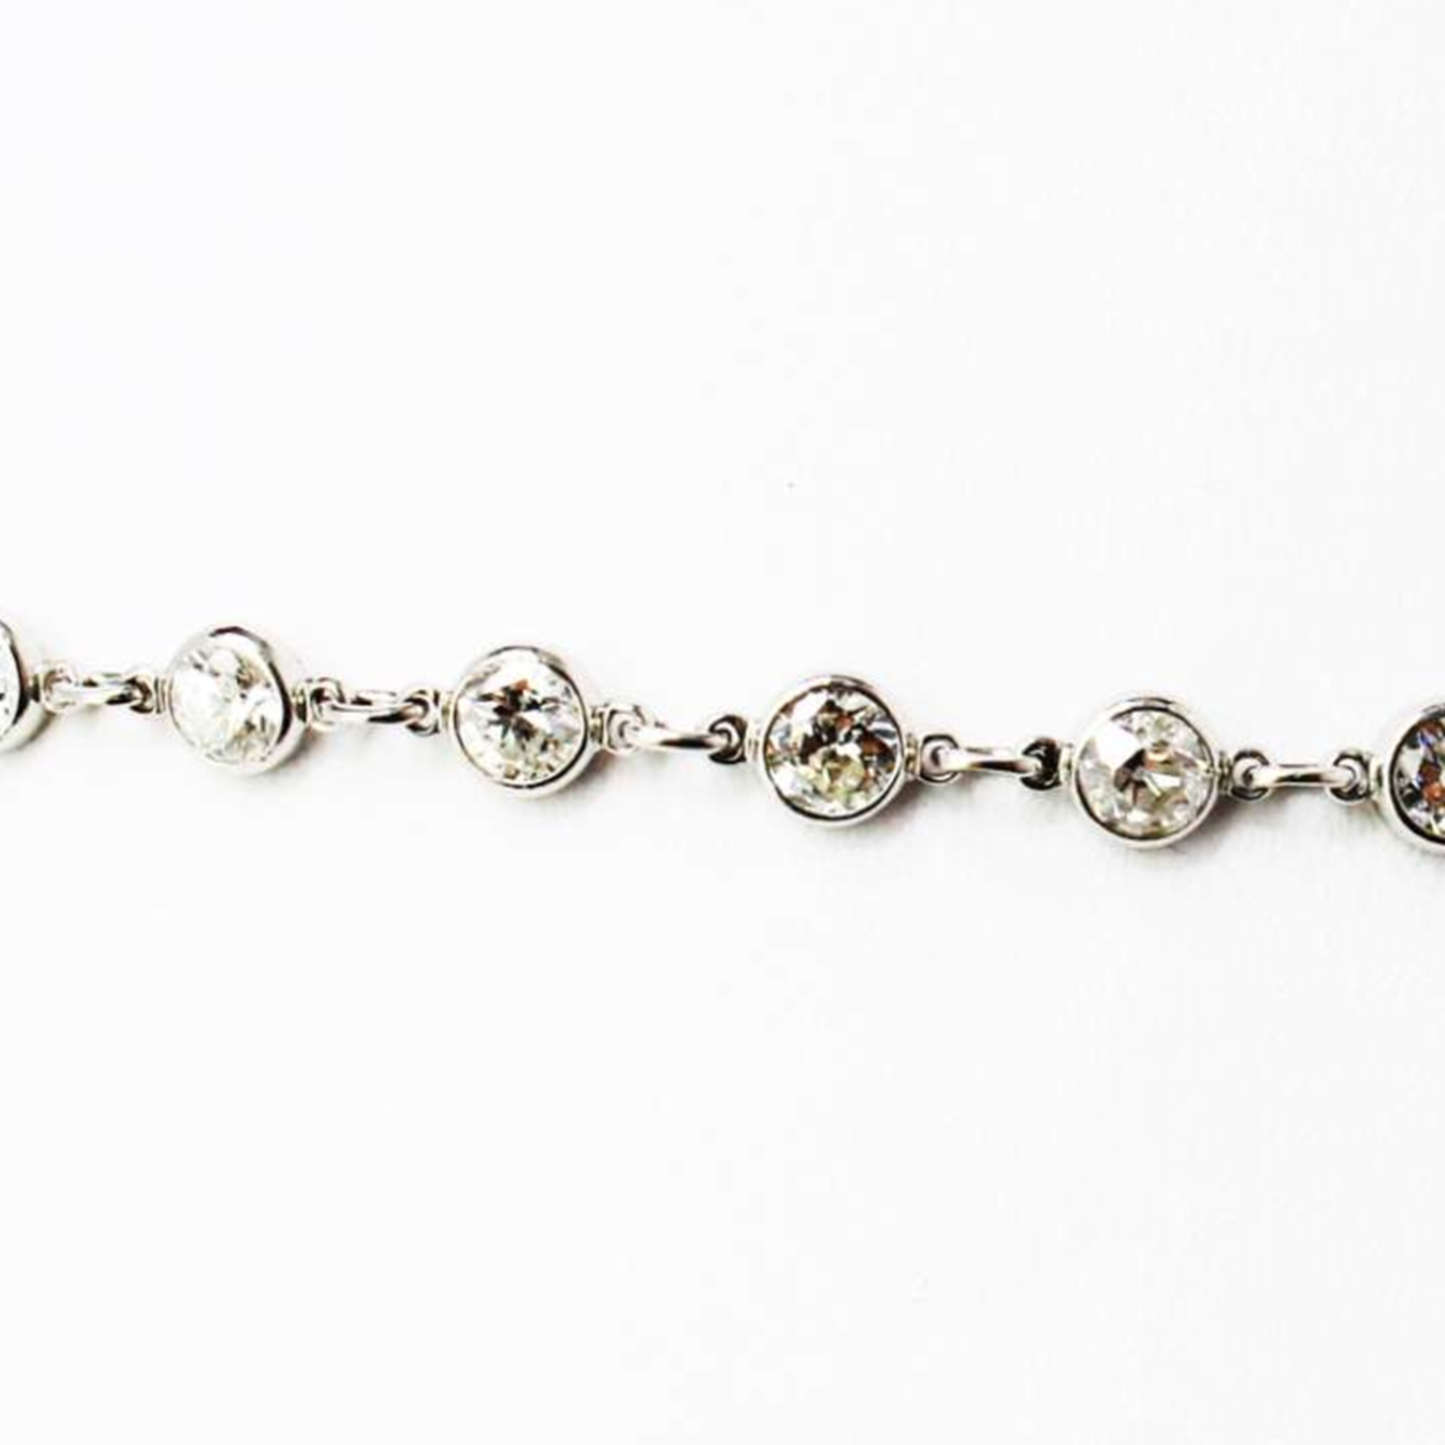 Post-1980s Platinum Diamond Necklace close-up details